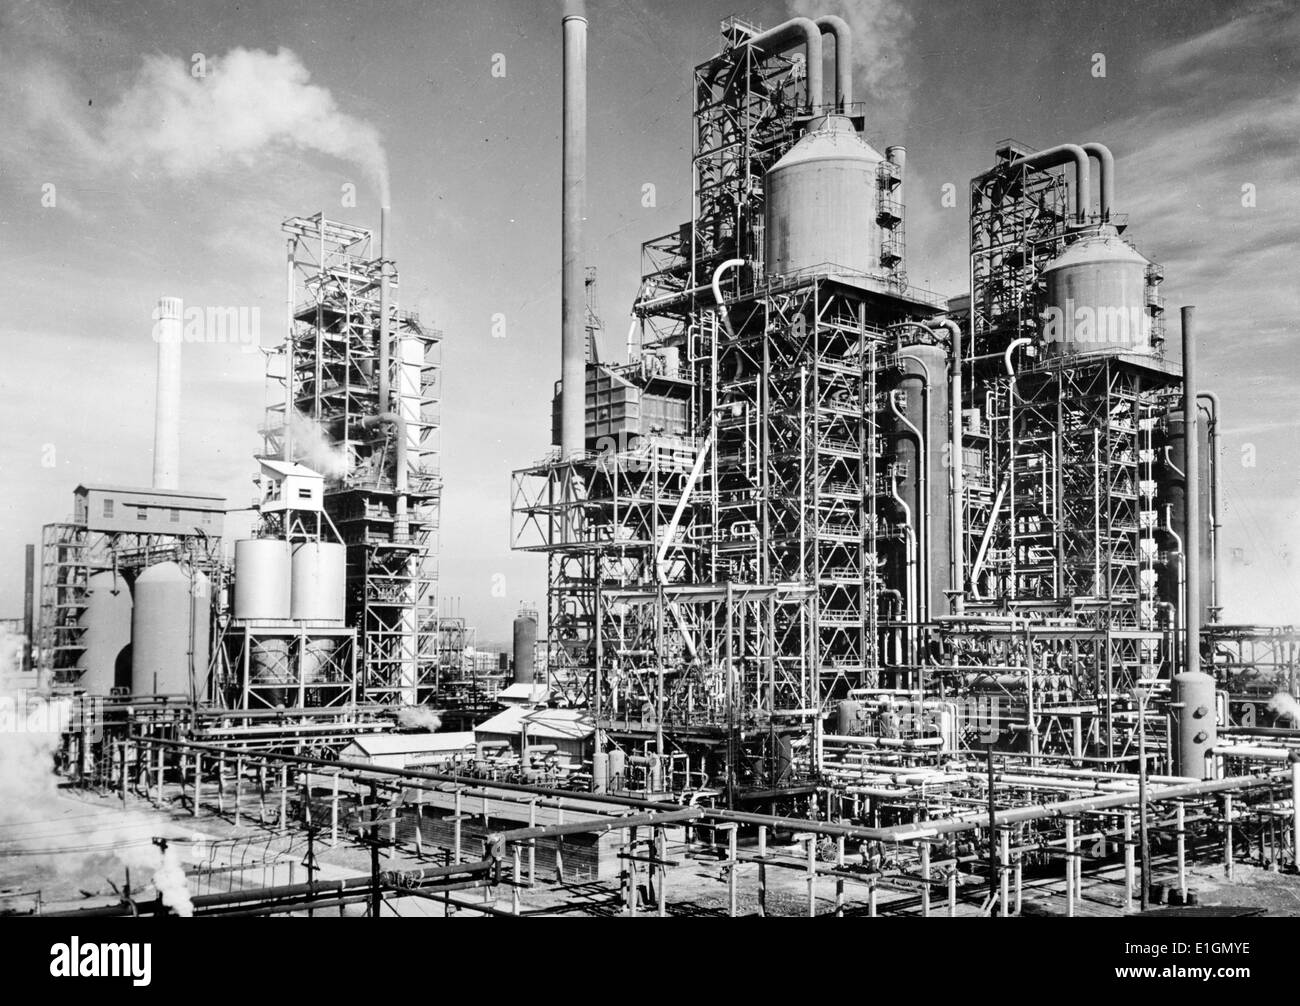 Photographie de trois (puis) nouveau catalyseur de craquage de l'huile 'Unités' s de l'essence pour les nouvelles machines de guerre à l'usine d'une grande entreprise de raffinage aux États-Unis dans le sud de l'état américain de la Louisiane. Datée 1944 Banque D'Images